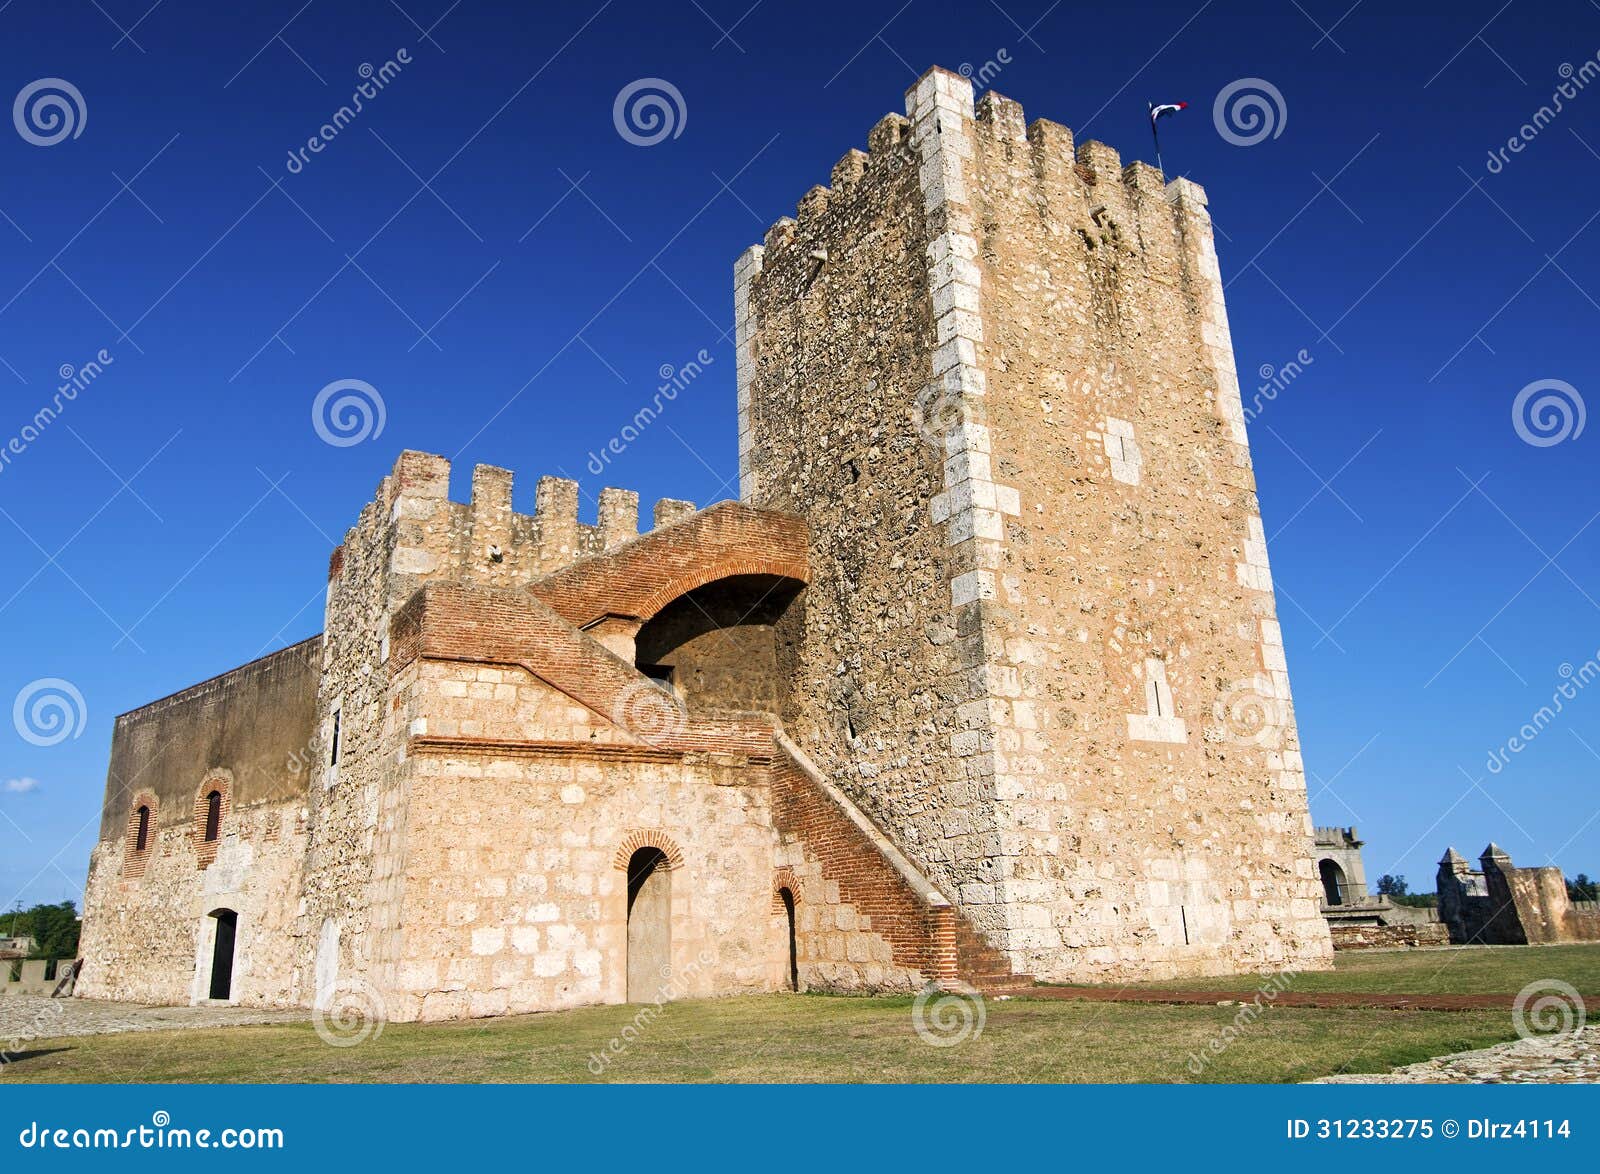 ozama fortress, dominican republic